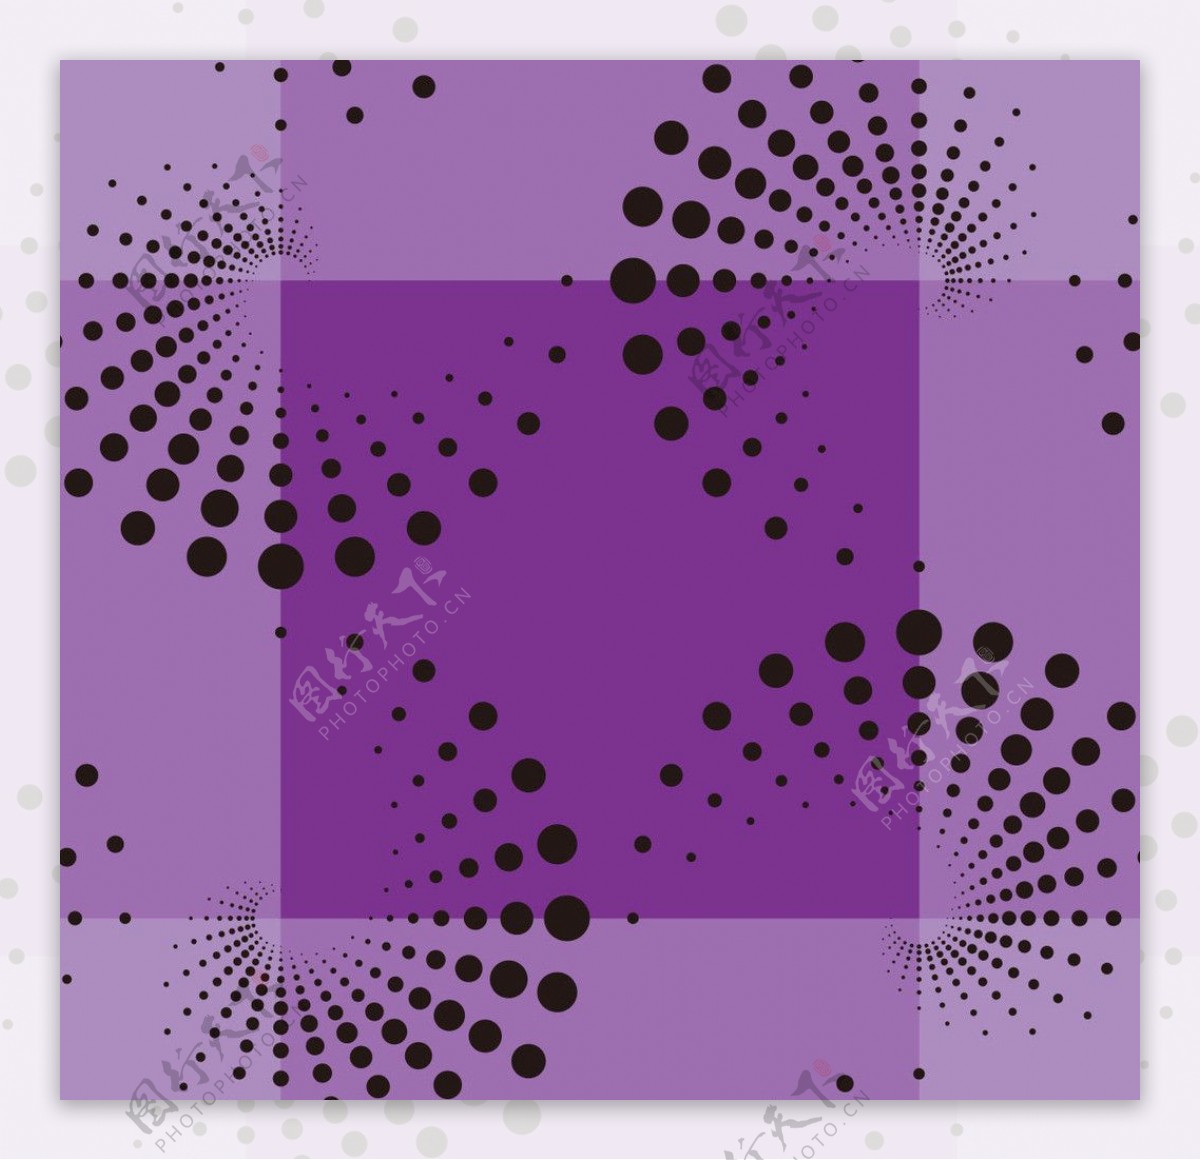 漩涡形点状紫色底纹图片